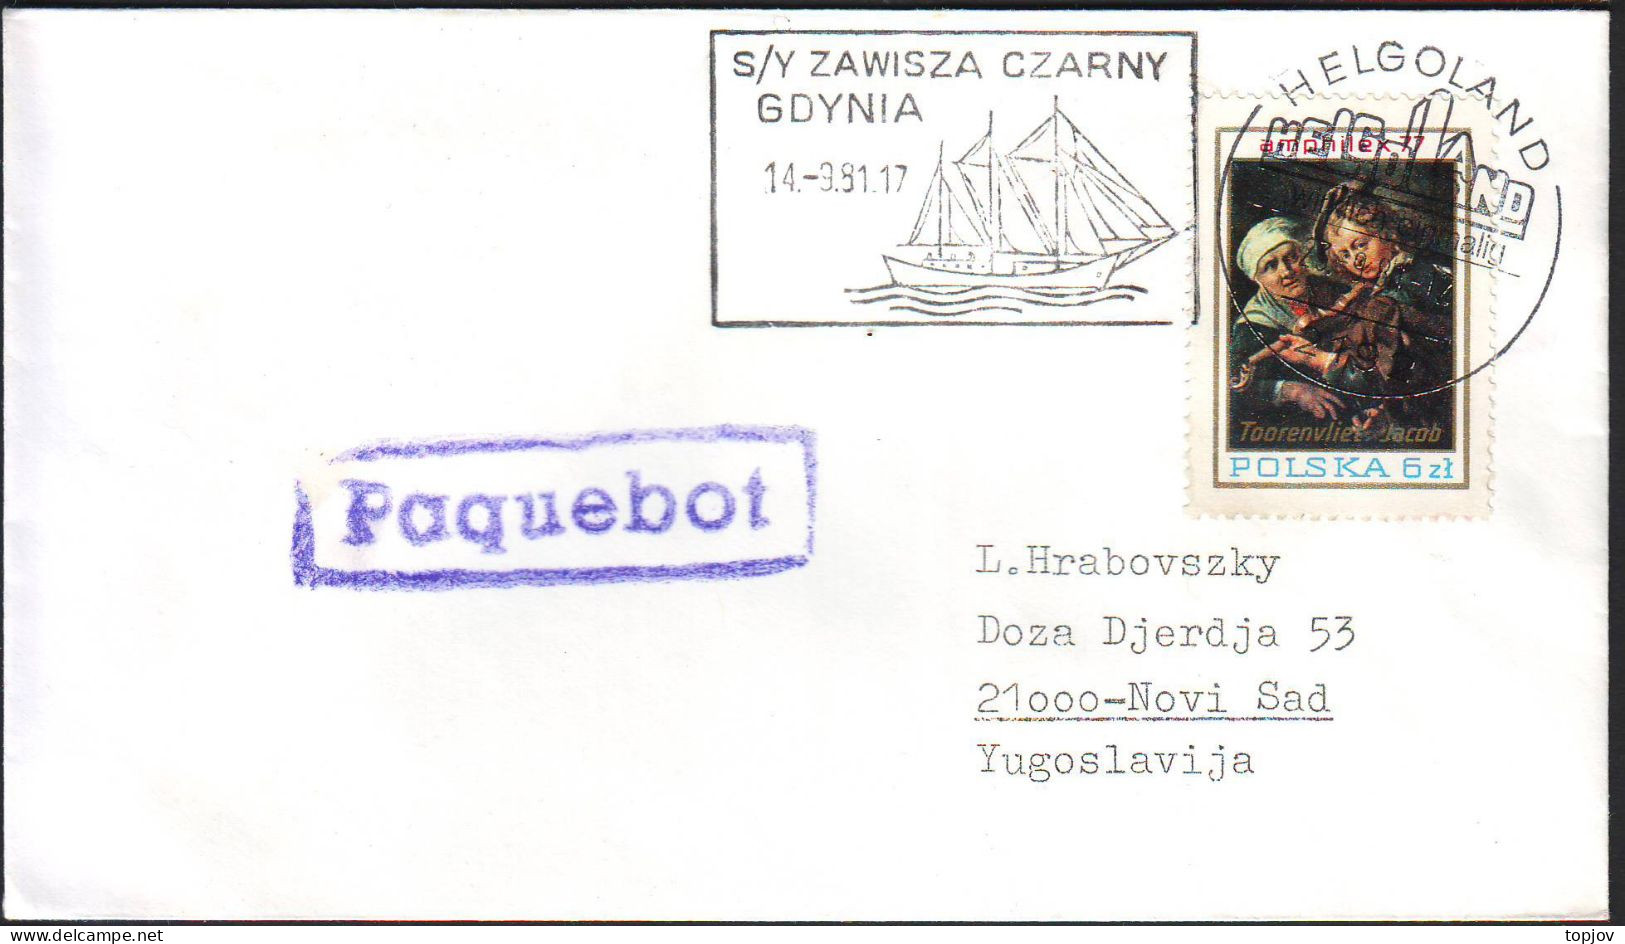 POLAND - S/Y ZAWISZA CZARNY - PAQUEBOT  HELGOLANDL - 1981 - Arctische Expedities